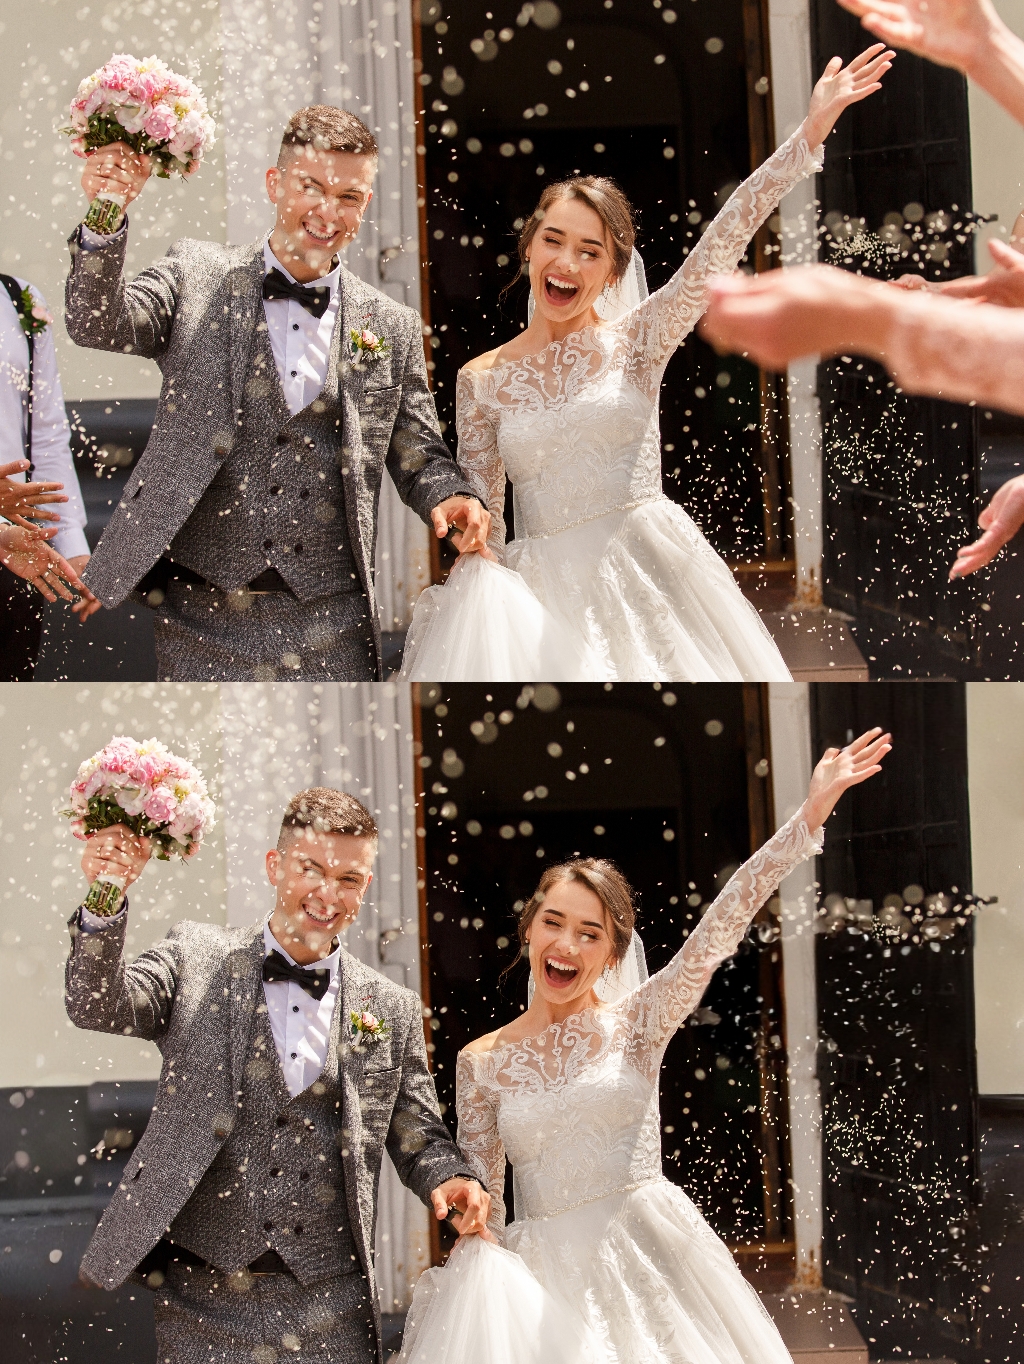 OnePlus wedding photos used to test AI Eraser function